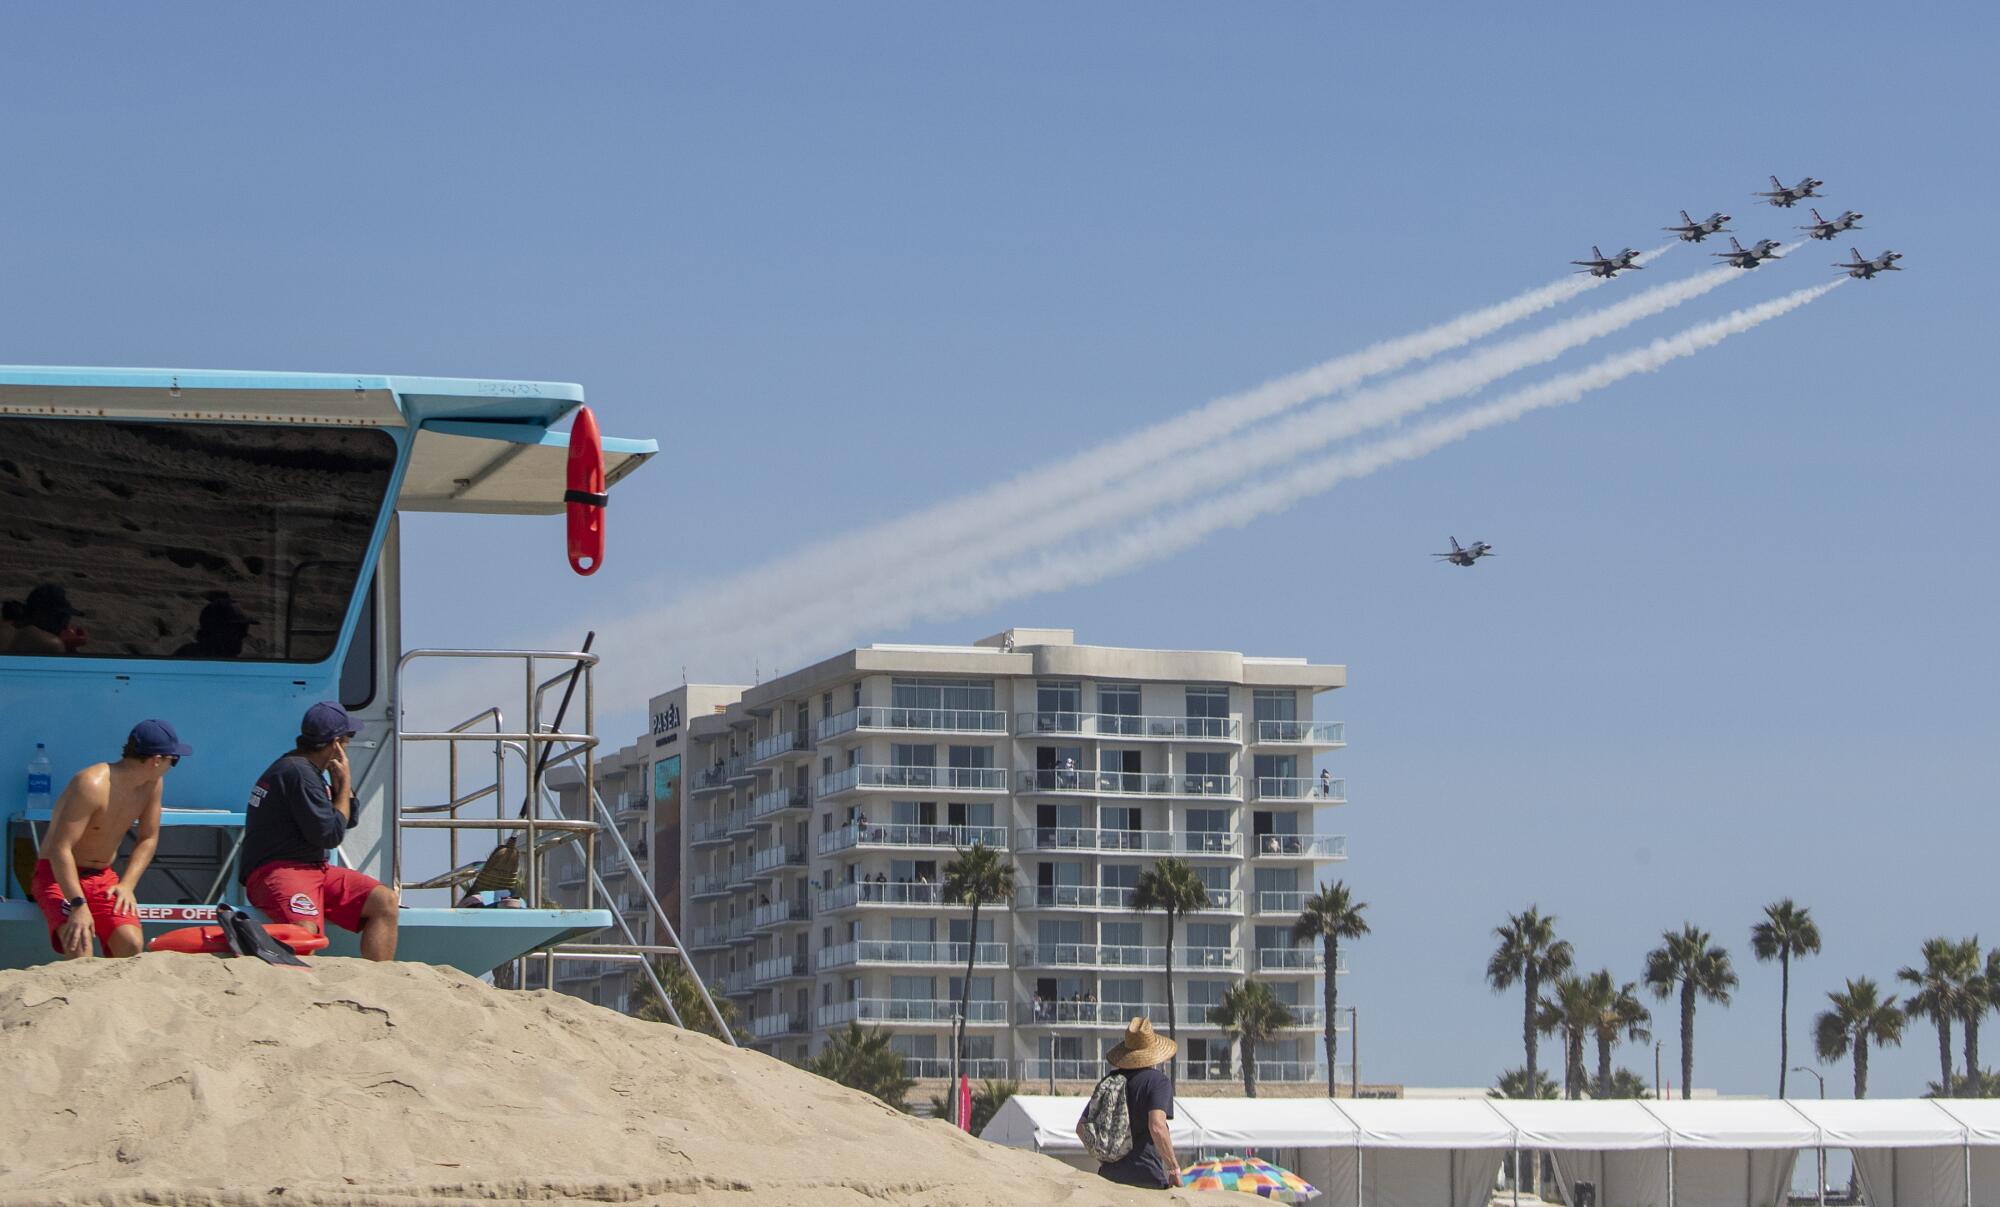  A Huntington Beach lifeguard plugs his ears as the U.S. Air Force Thunderbirds arrive